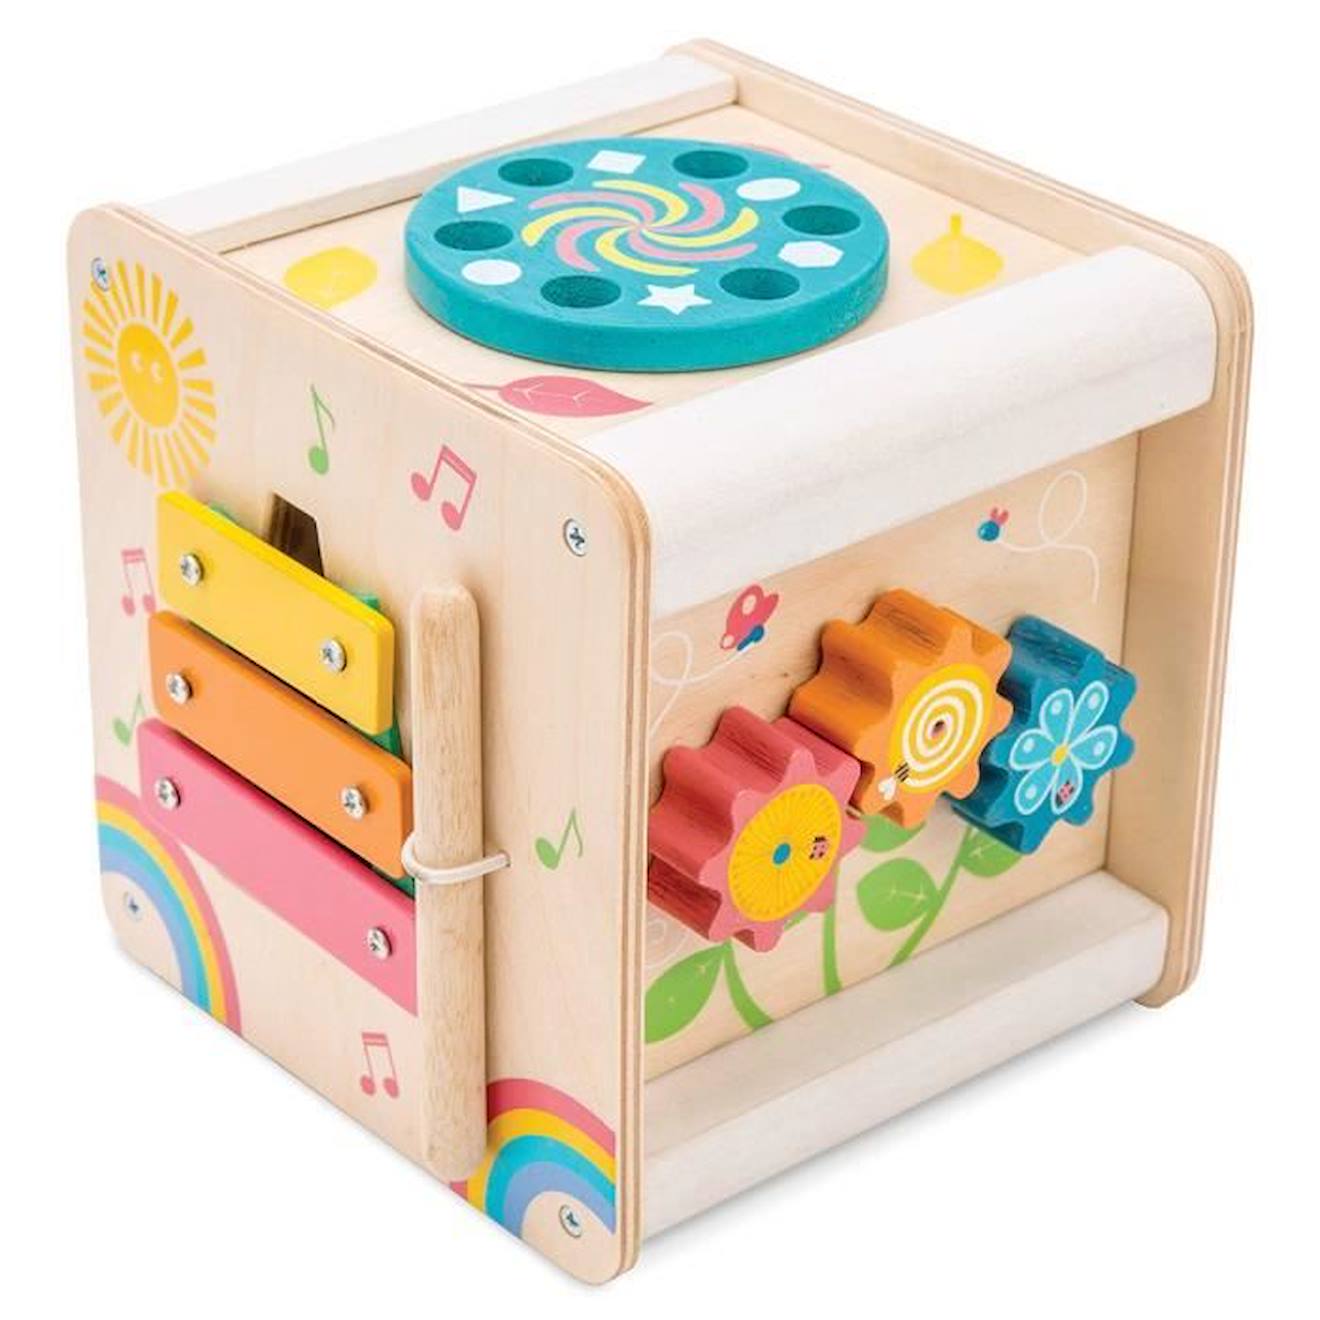 Petit Cube D'activités En Bois - Le Toy Van - Mixte - 24 Mois - Marron - Blanc - Jouet D'éveil Compa